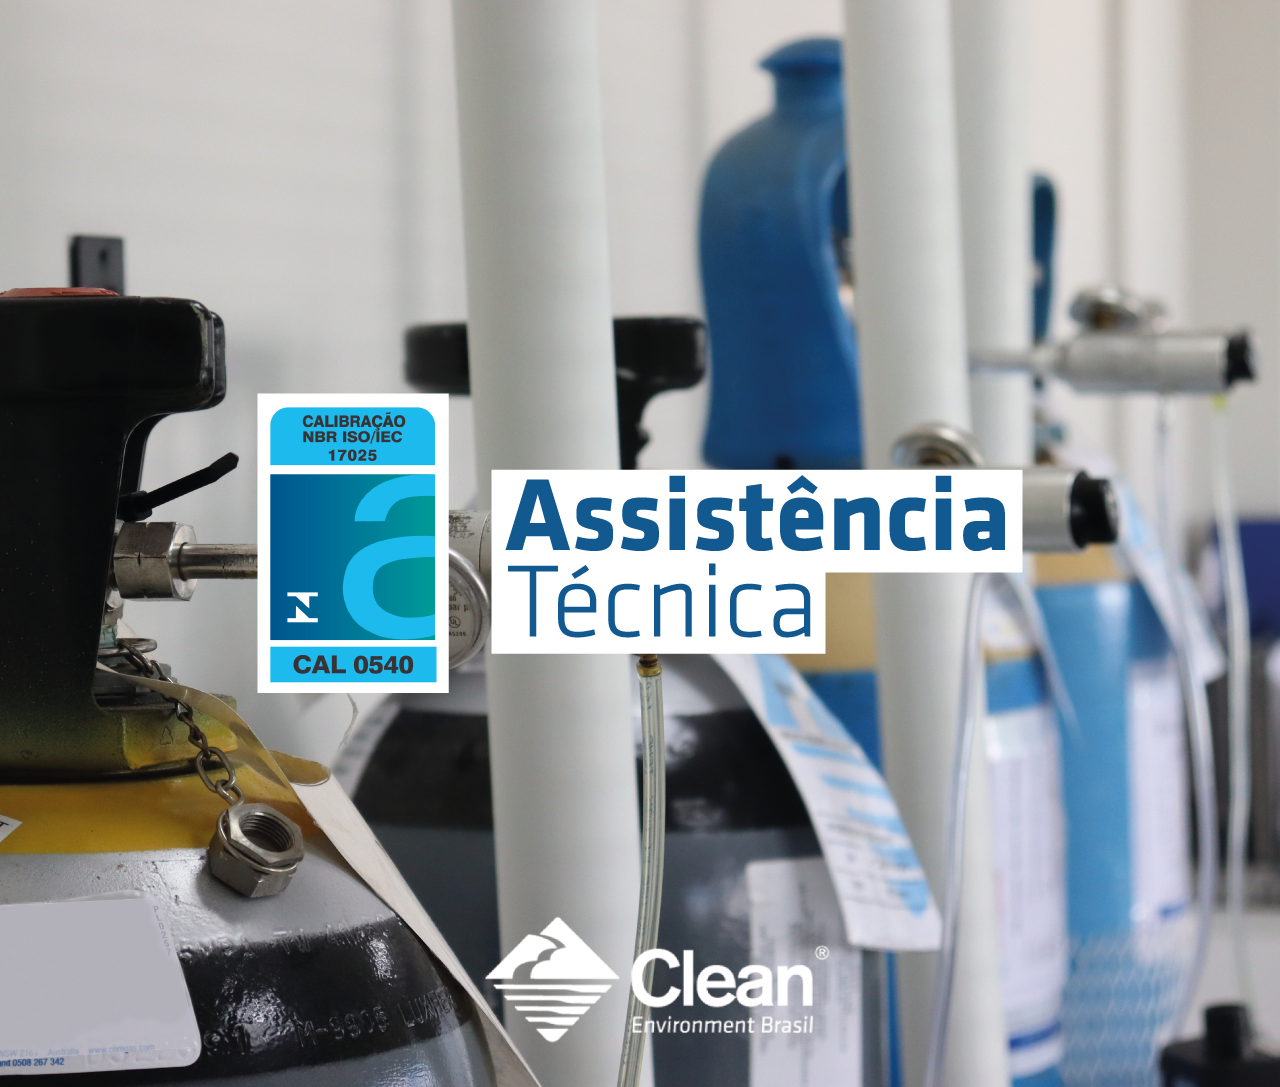 Departamento de Assistência Técnica da Clean — Serviço de referência no mercado